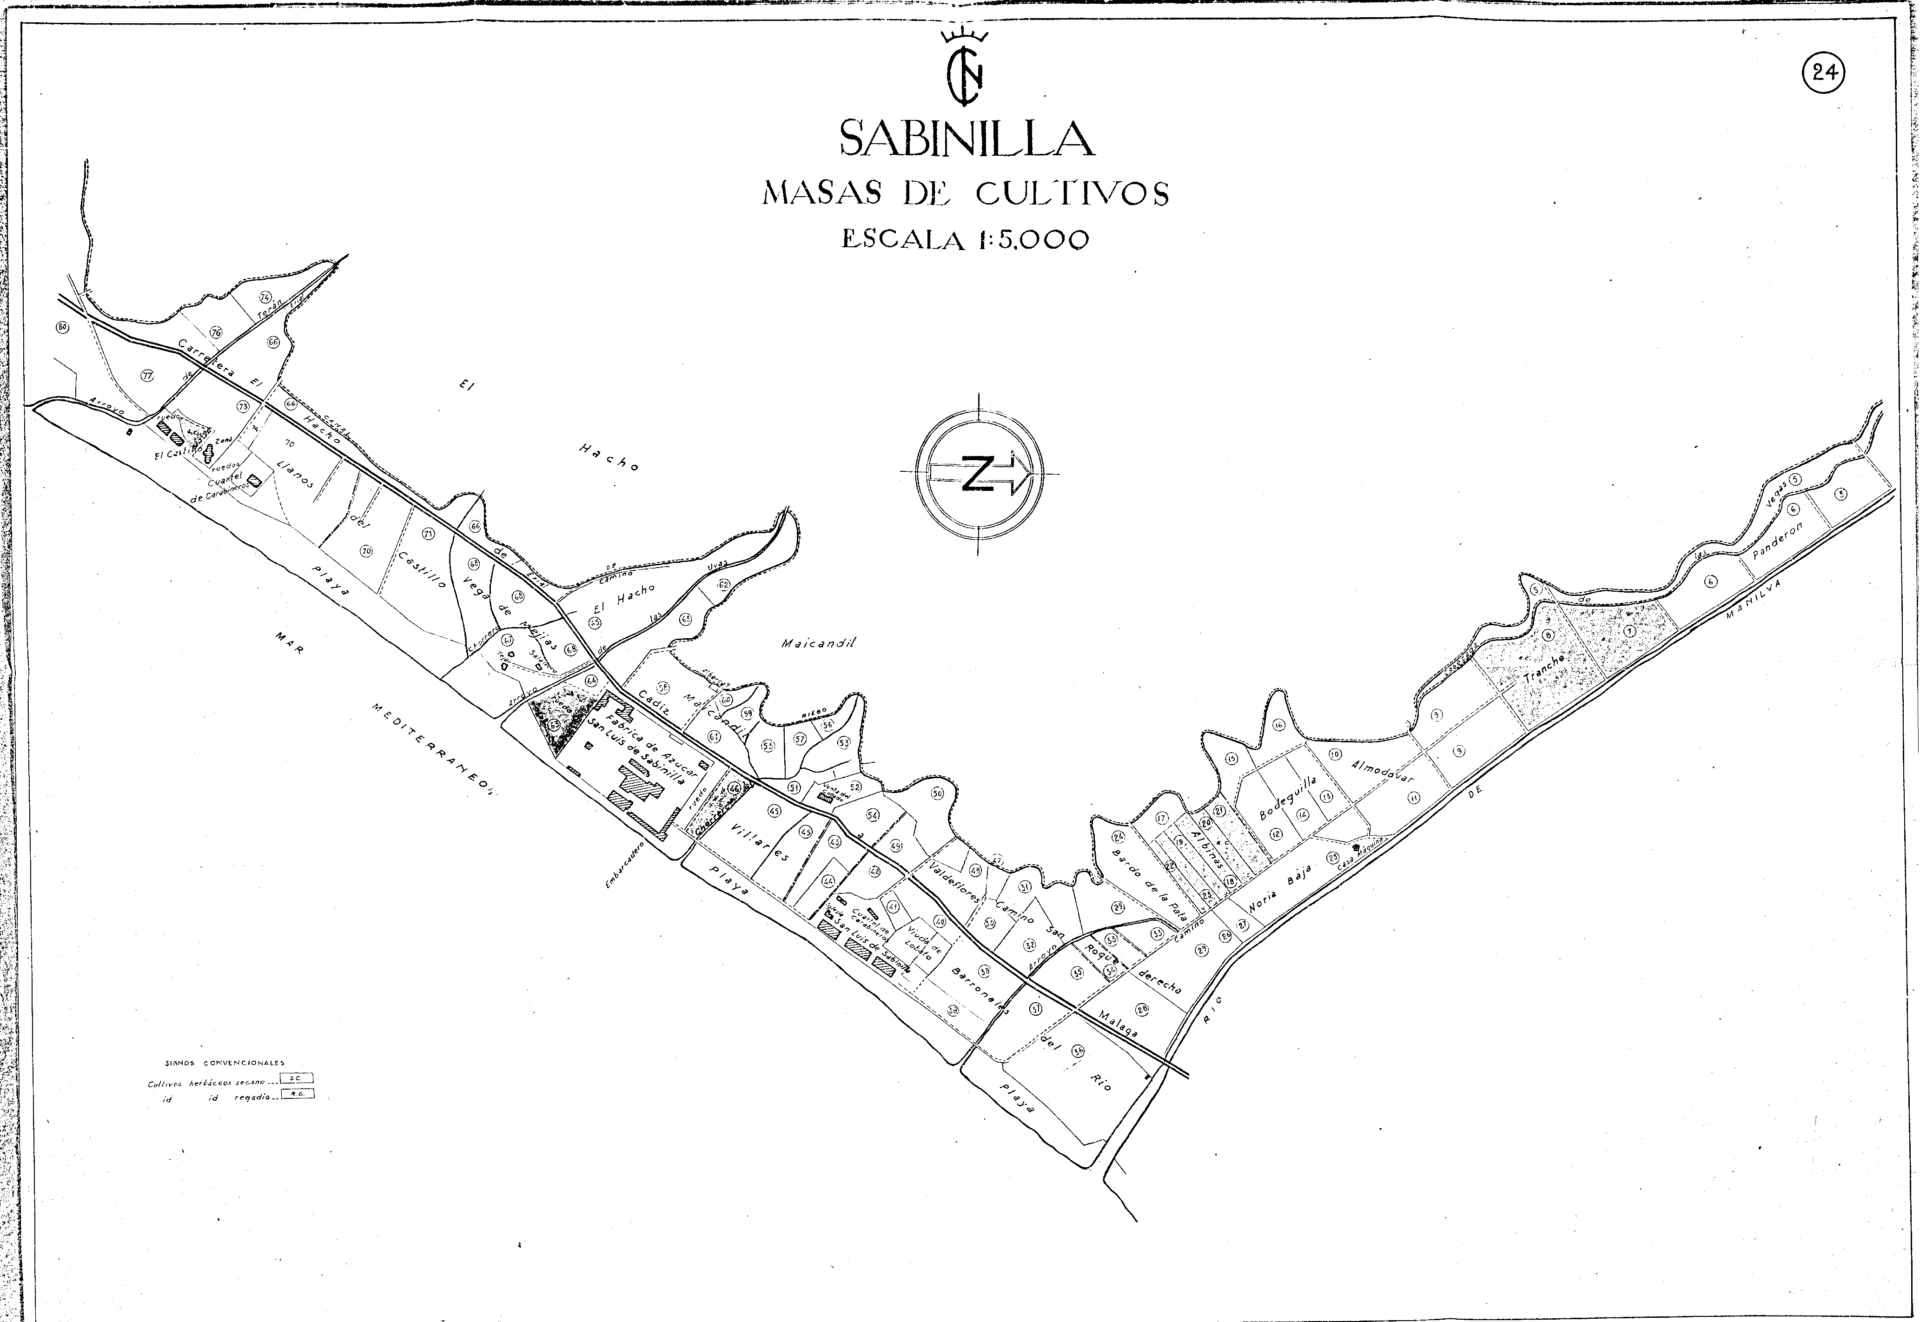 Sabinilla: masas de cultivos. Instituto Nacional de Colonizacin. 1944